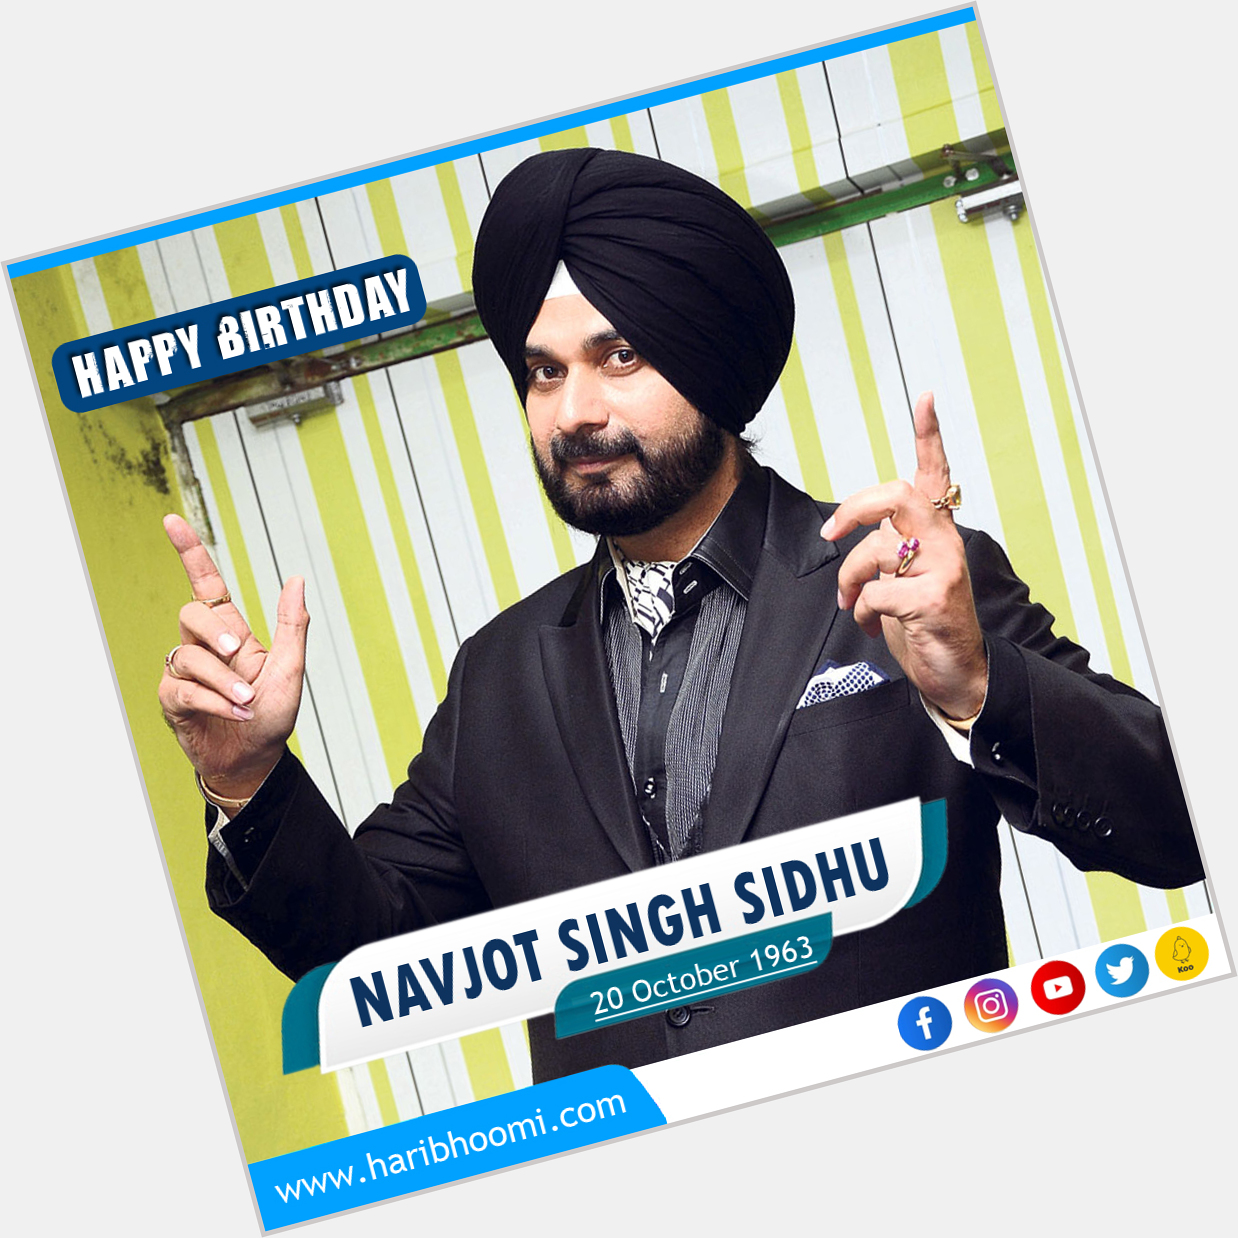 Happy Birthday Navjot Singh Sidhu   